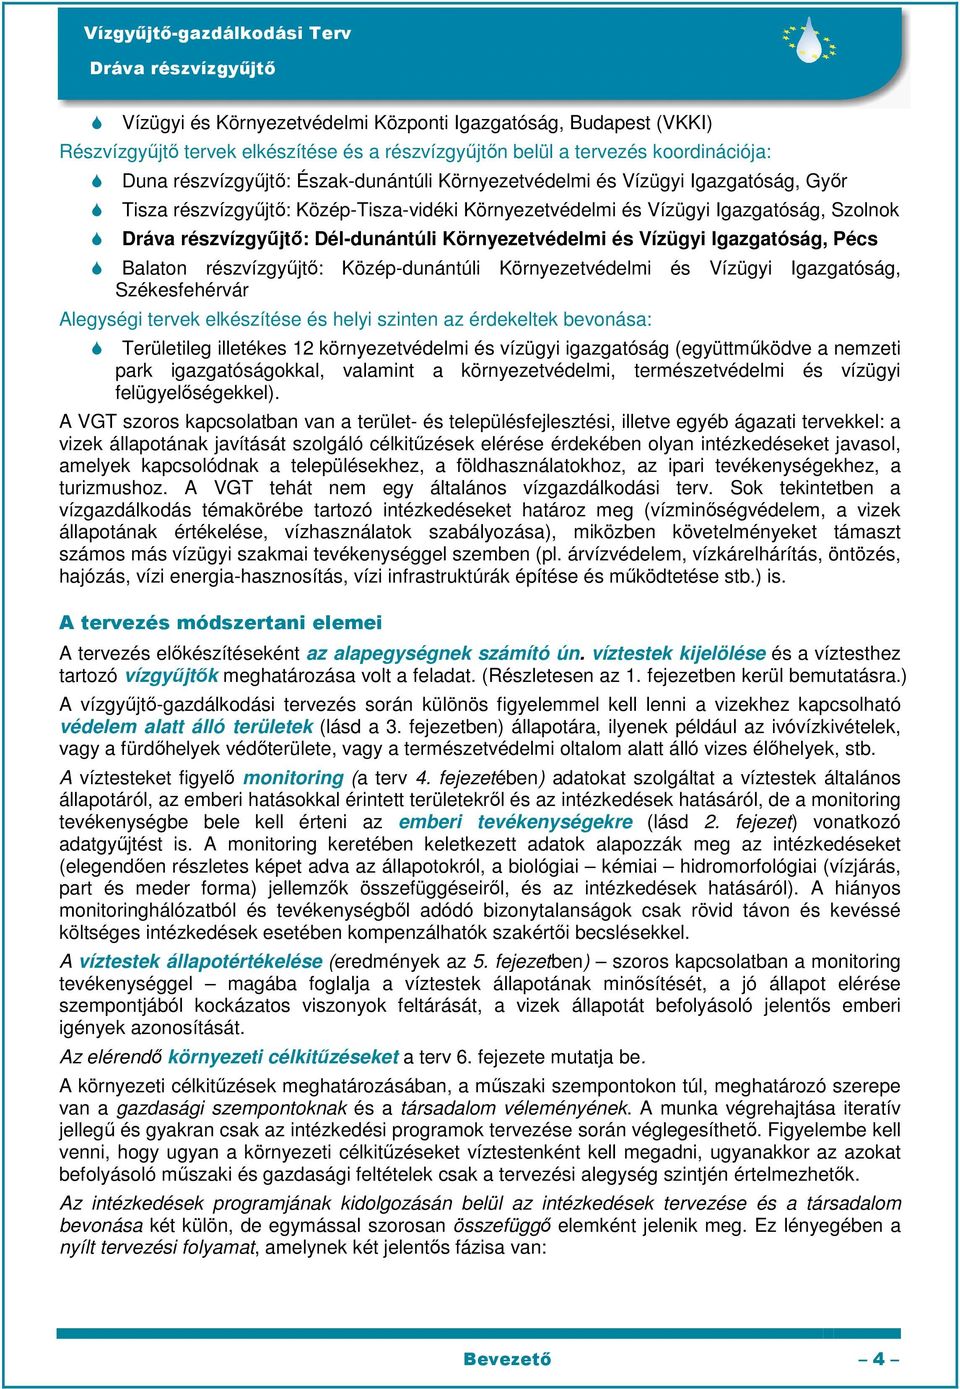 Balaton részvízgyőjtı: Közép-dunántúli Környezetvédelmi és Vízügyi Igazgatóság, Székesfehérvár Alegységi tervek elkészítése és helyi szinten az érdekeltek bevonása: Területileg illetékes 12